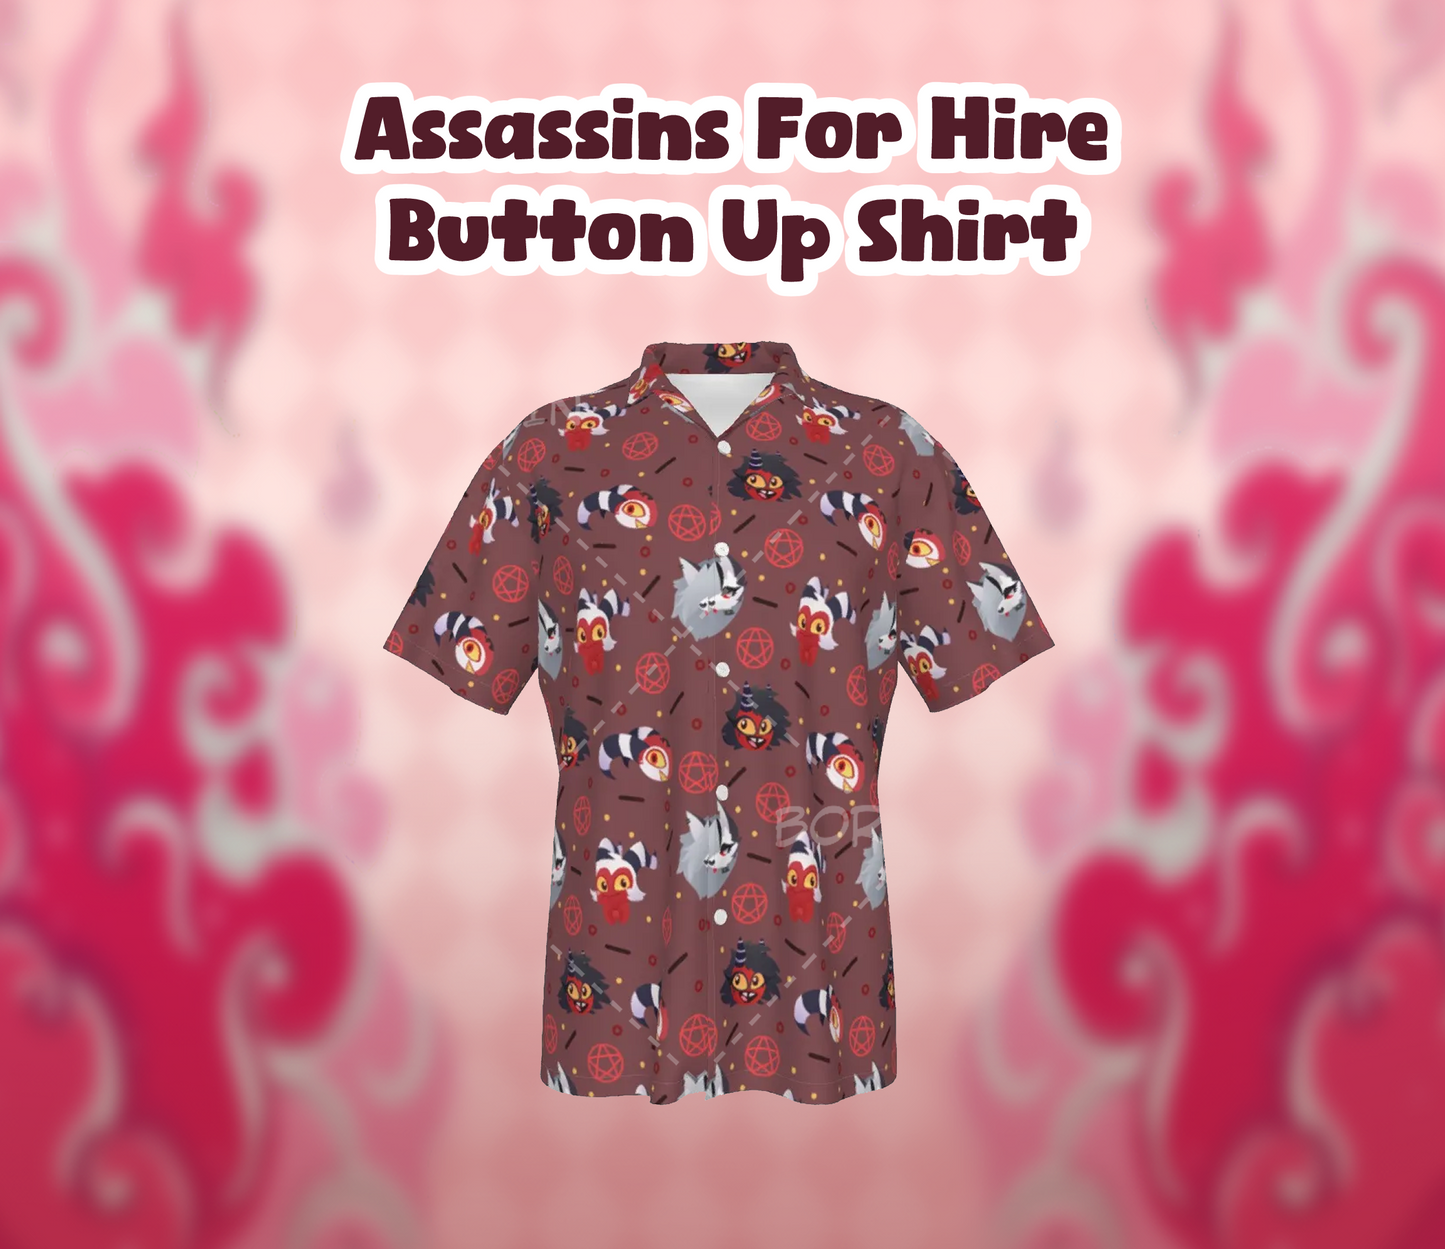 Assassins For Hire Button Up Shirt